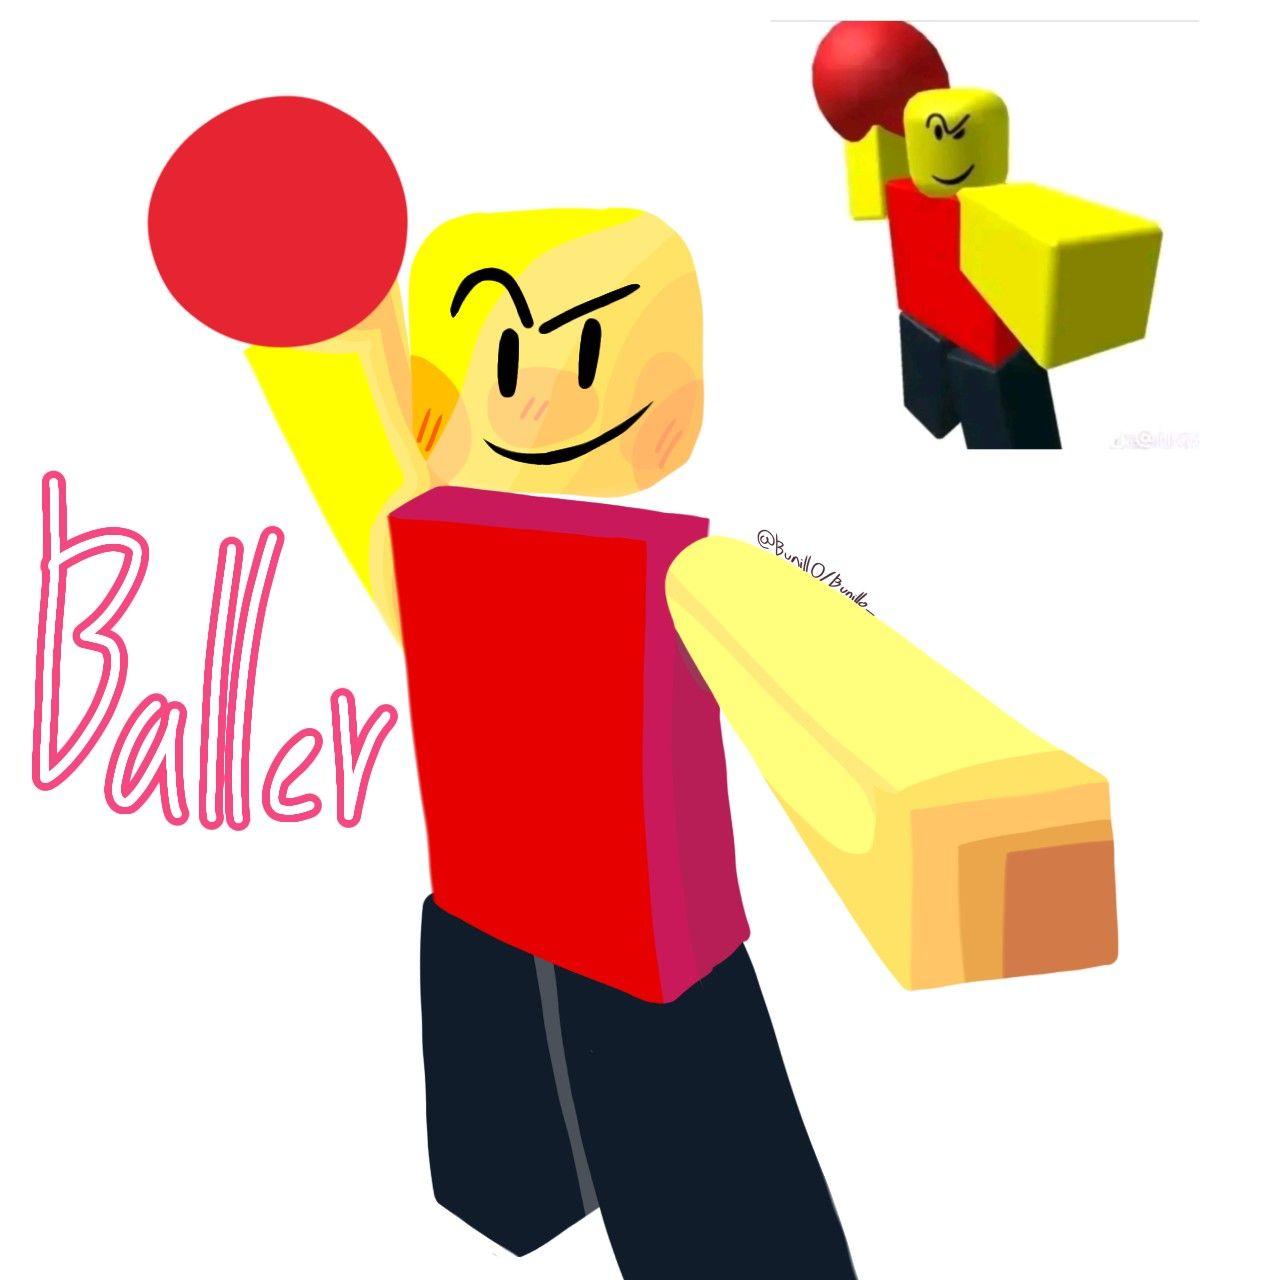 Baller (Roblox) - Download Free 3D model by Johnthe3dModeler  (@Johnthe3dModeler) [e76efca]